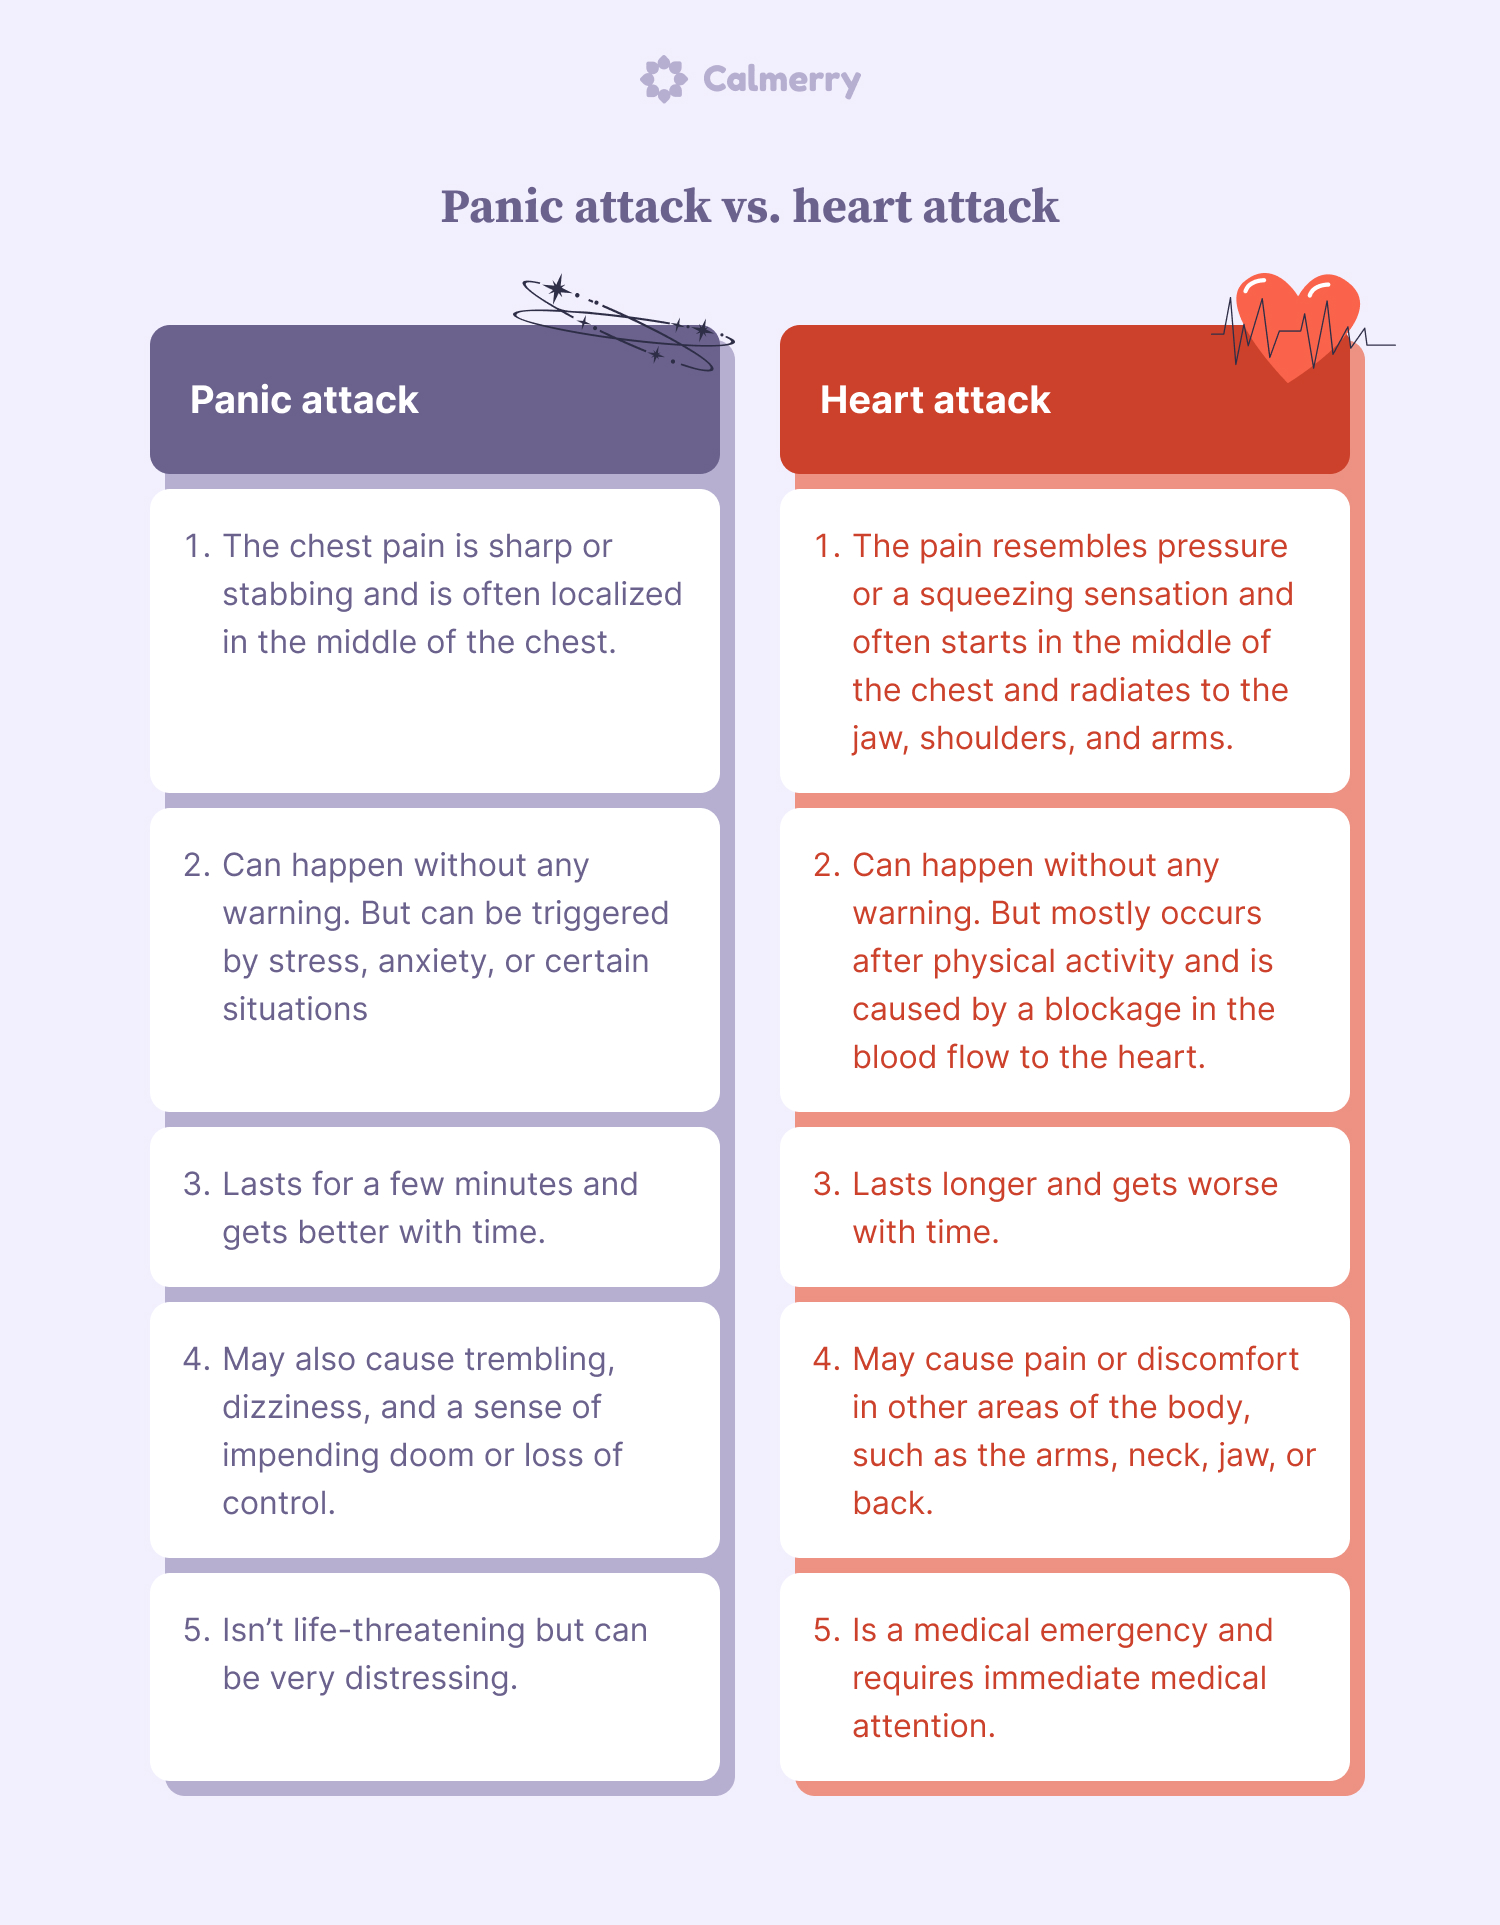 Panic attack vs. heart attack comparison table